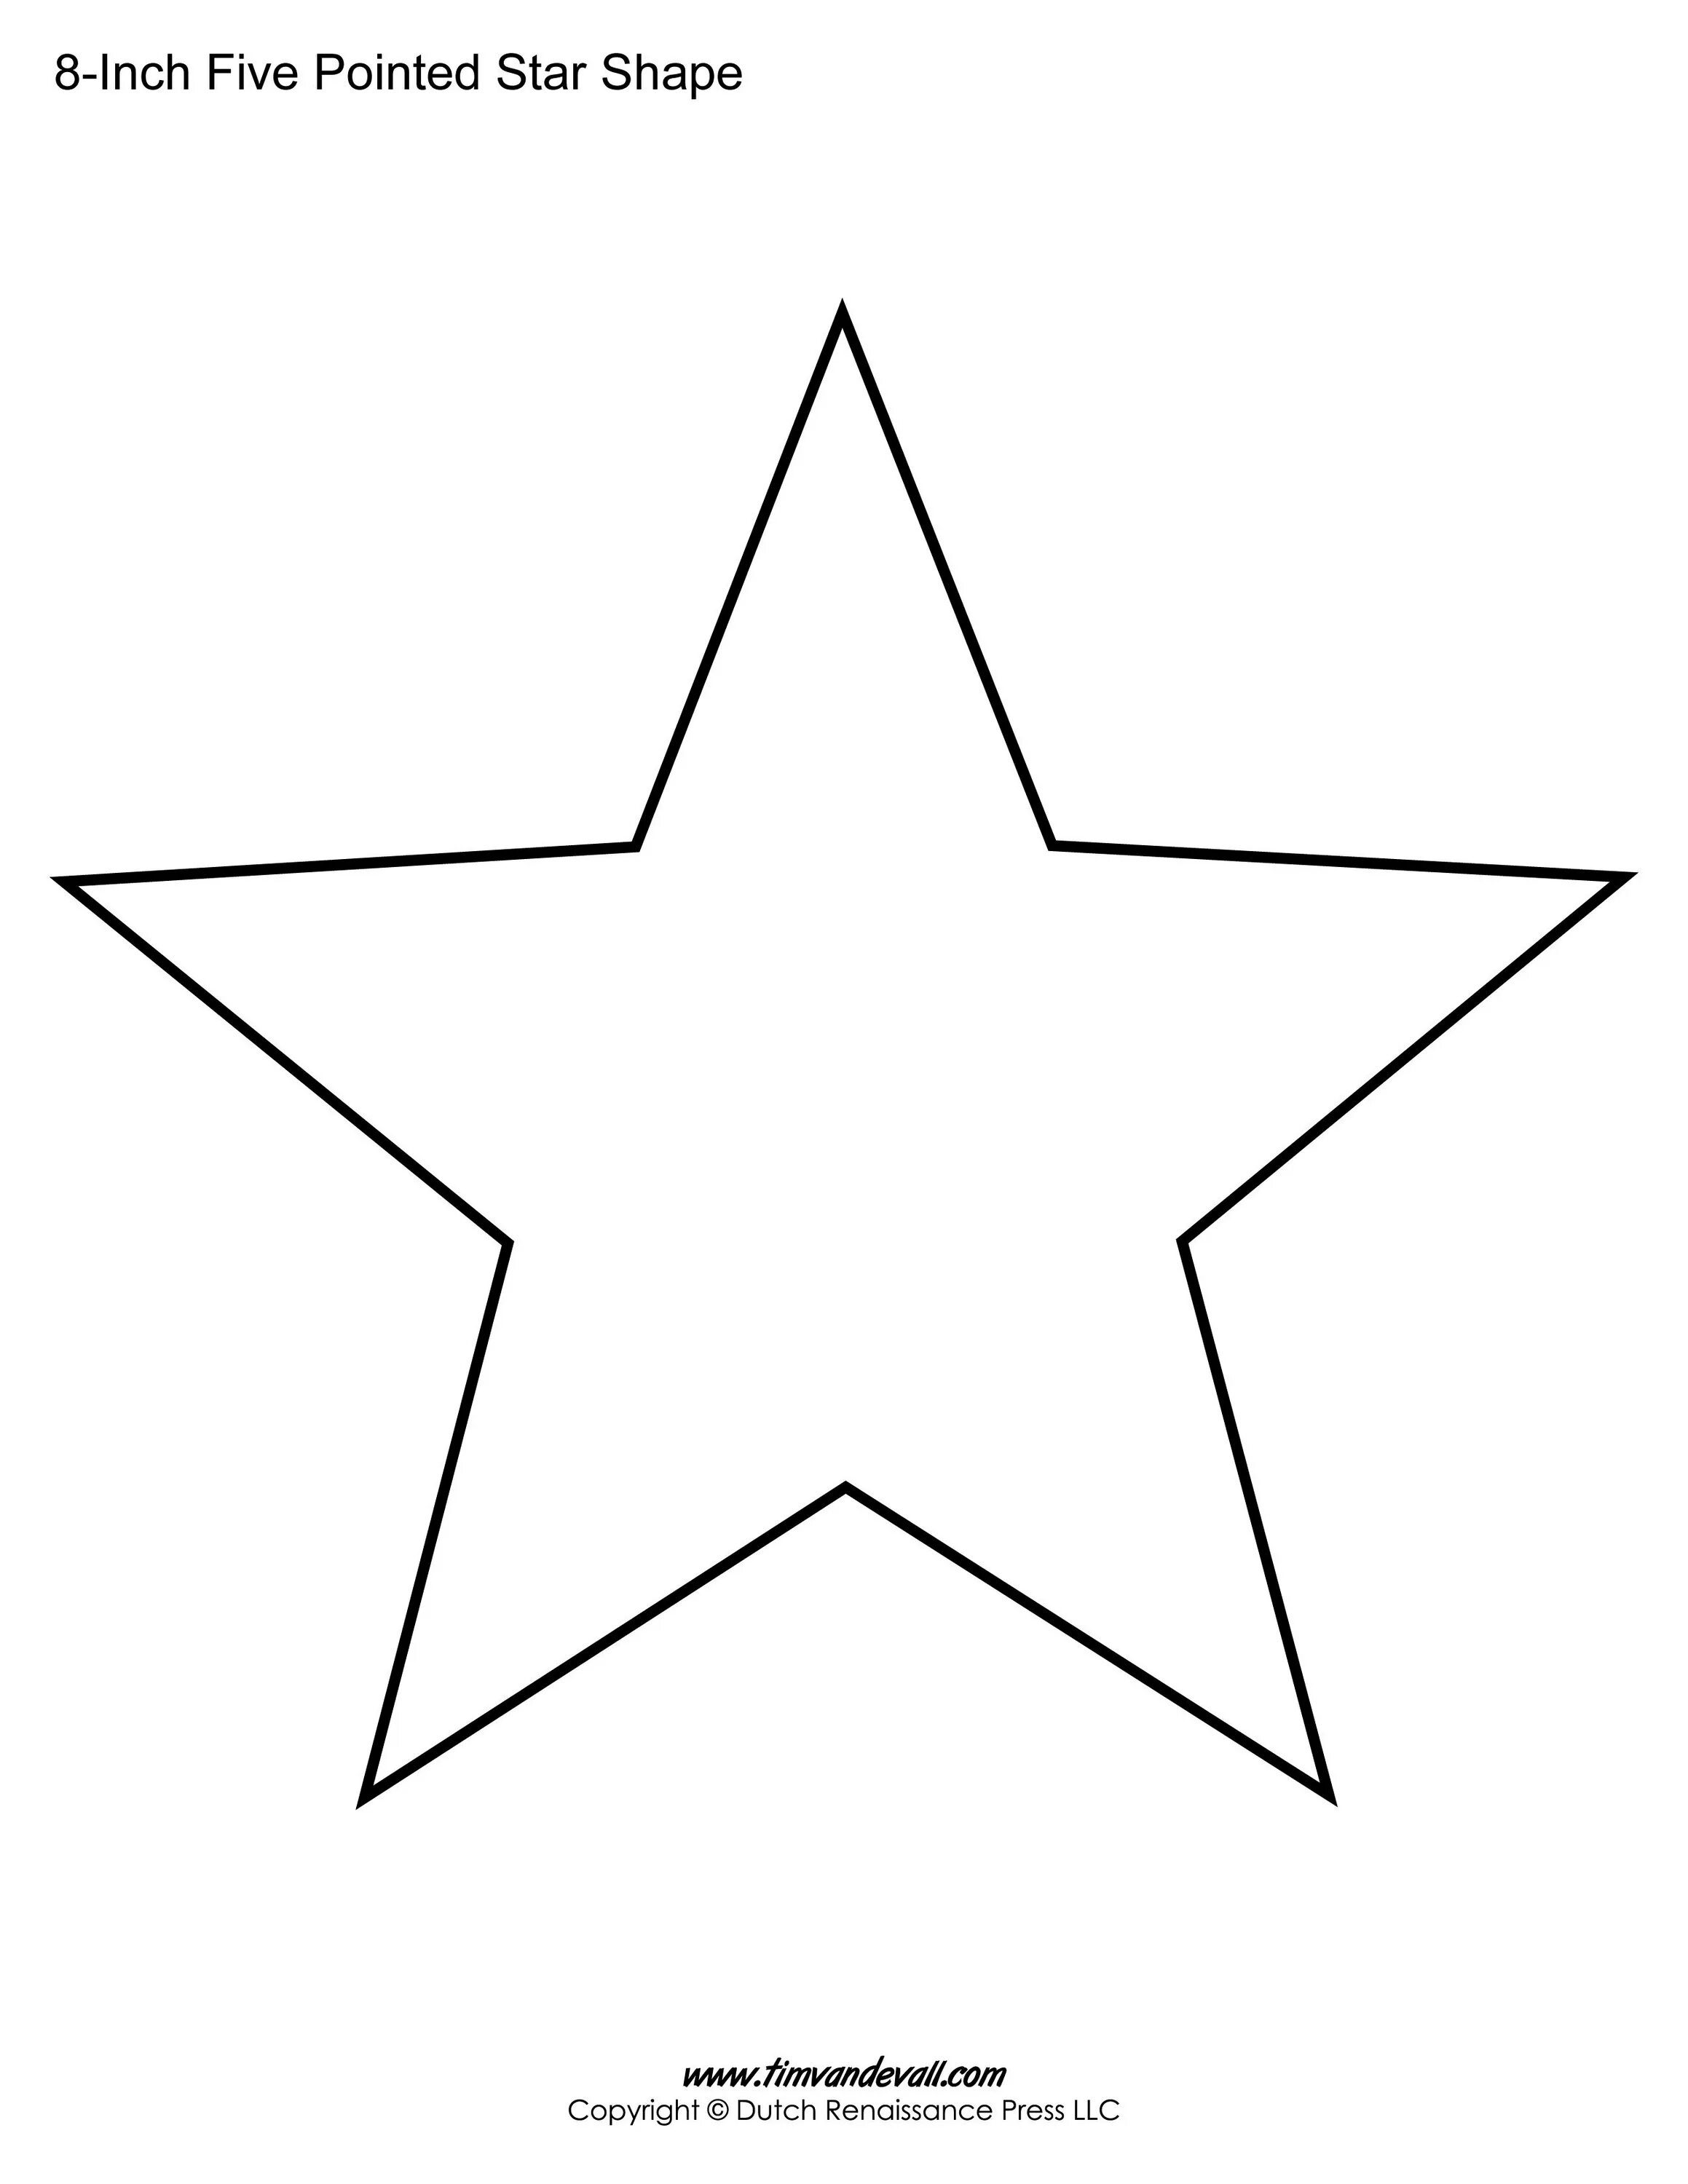 Звезды шаблоны для вырезания из бумаги